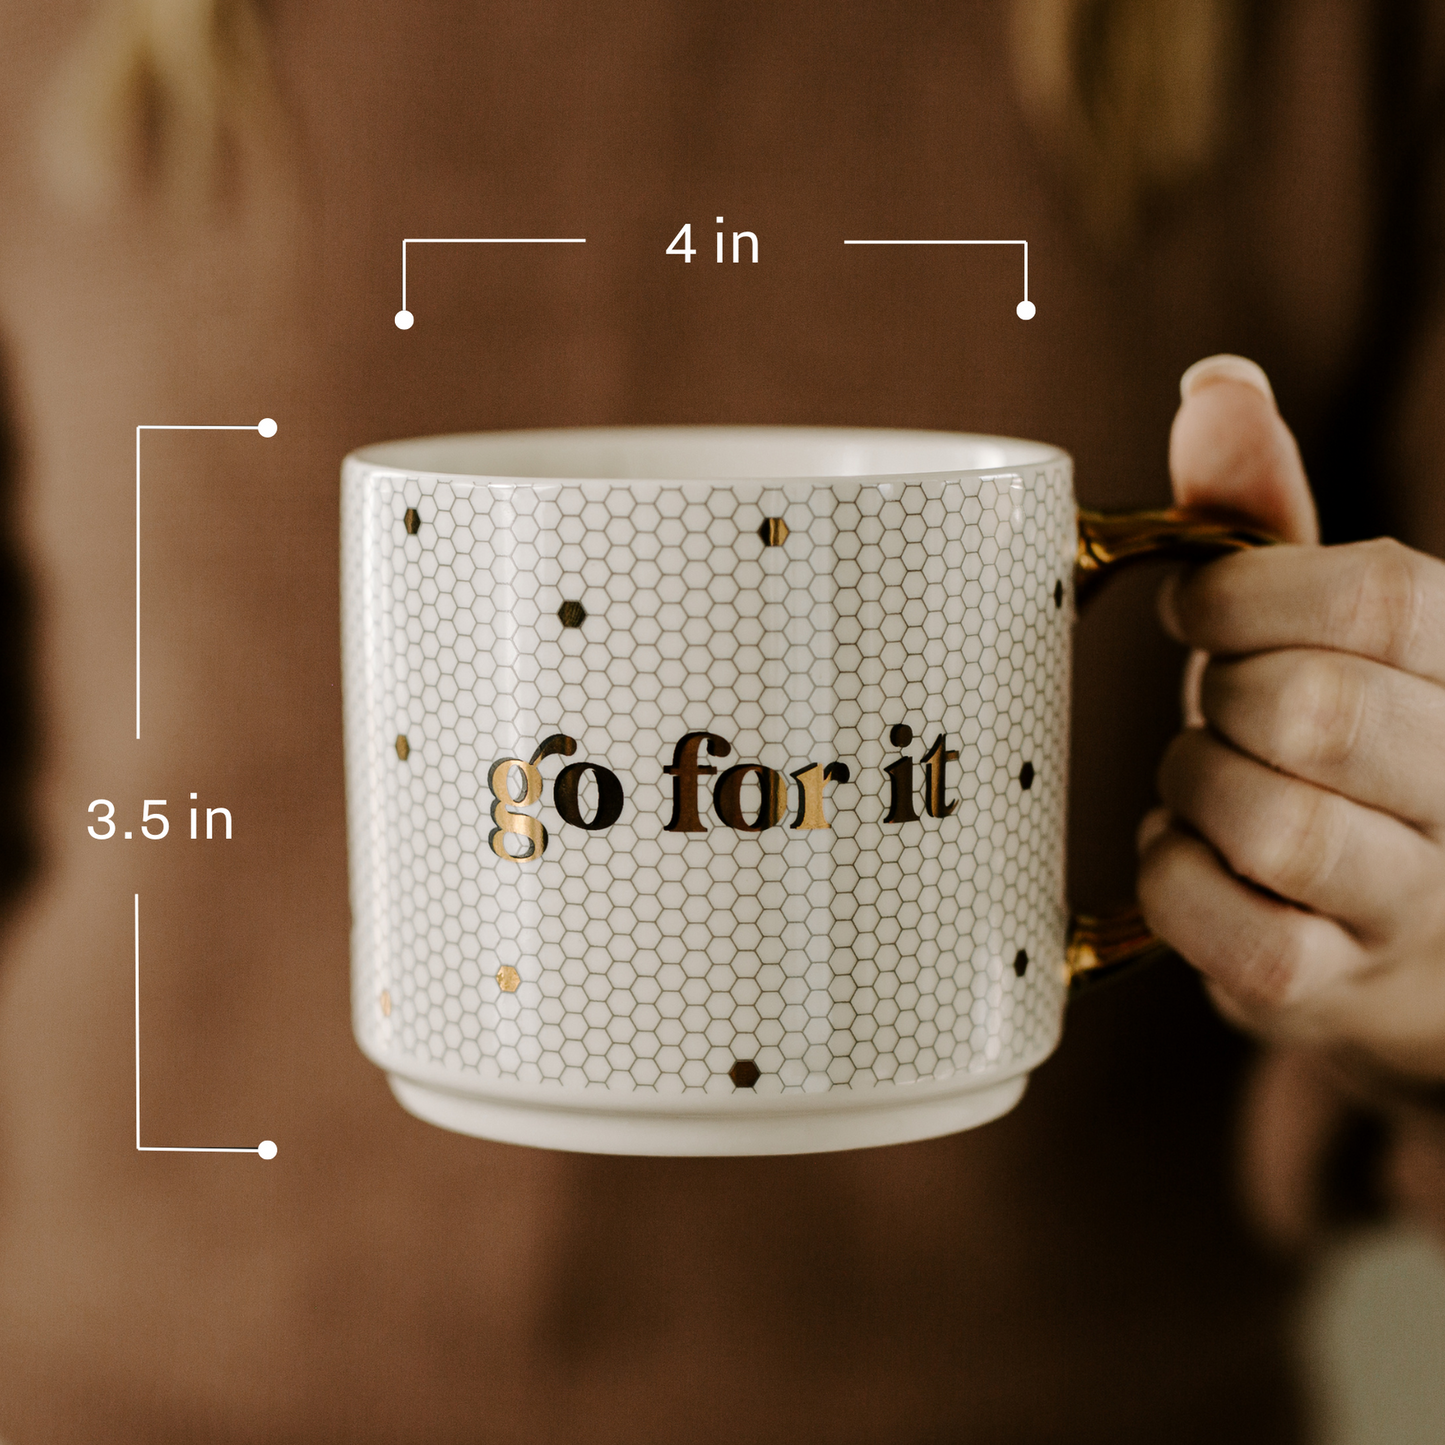 Mom Tile 17oz Coffee Mug